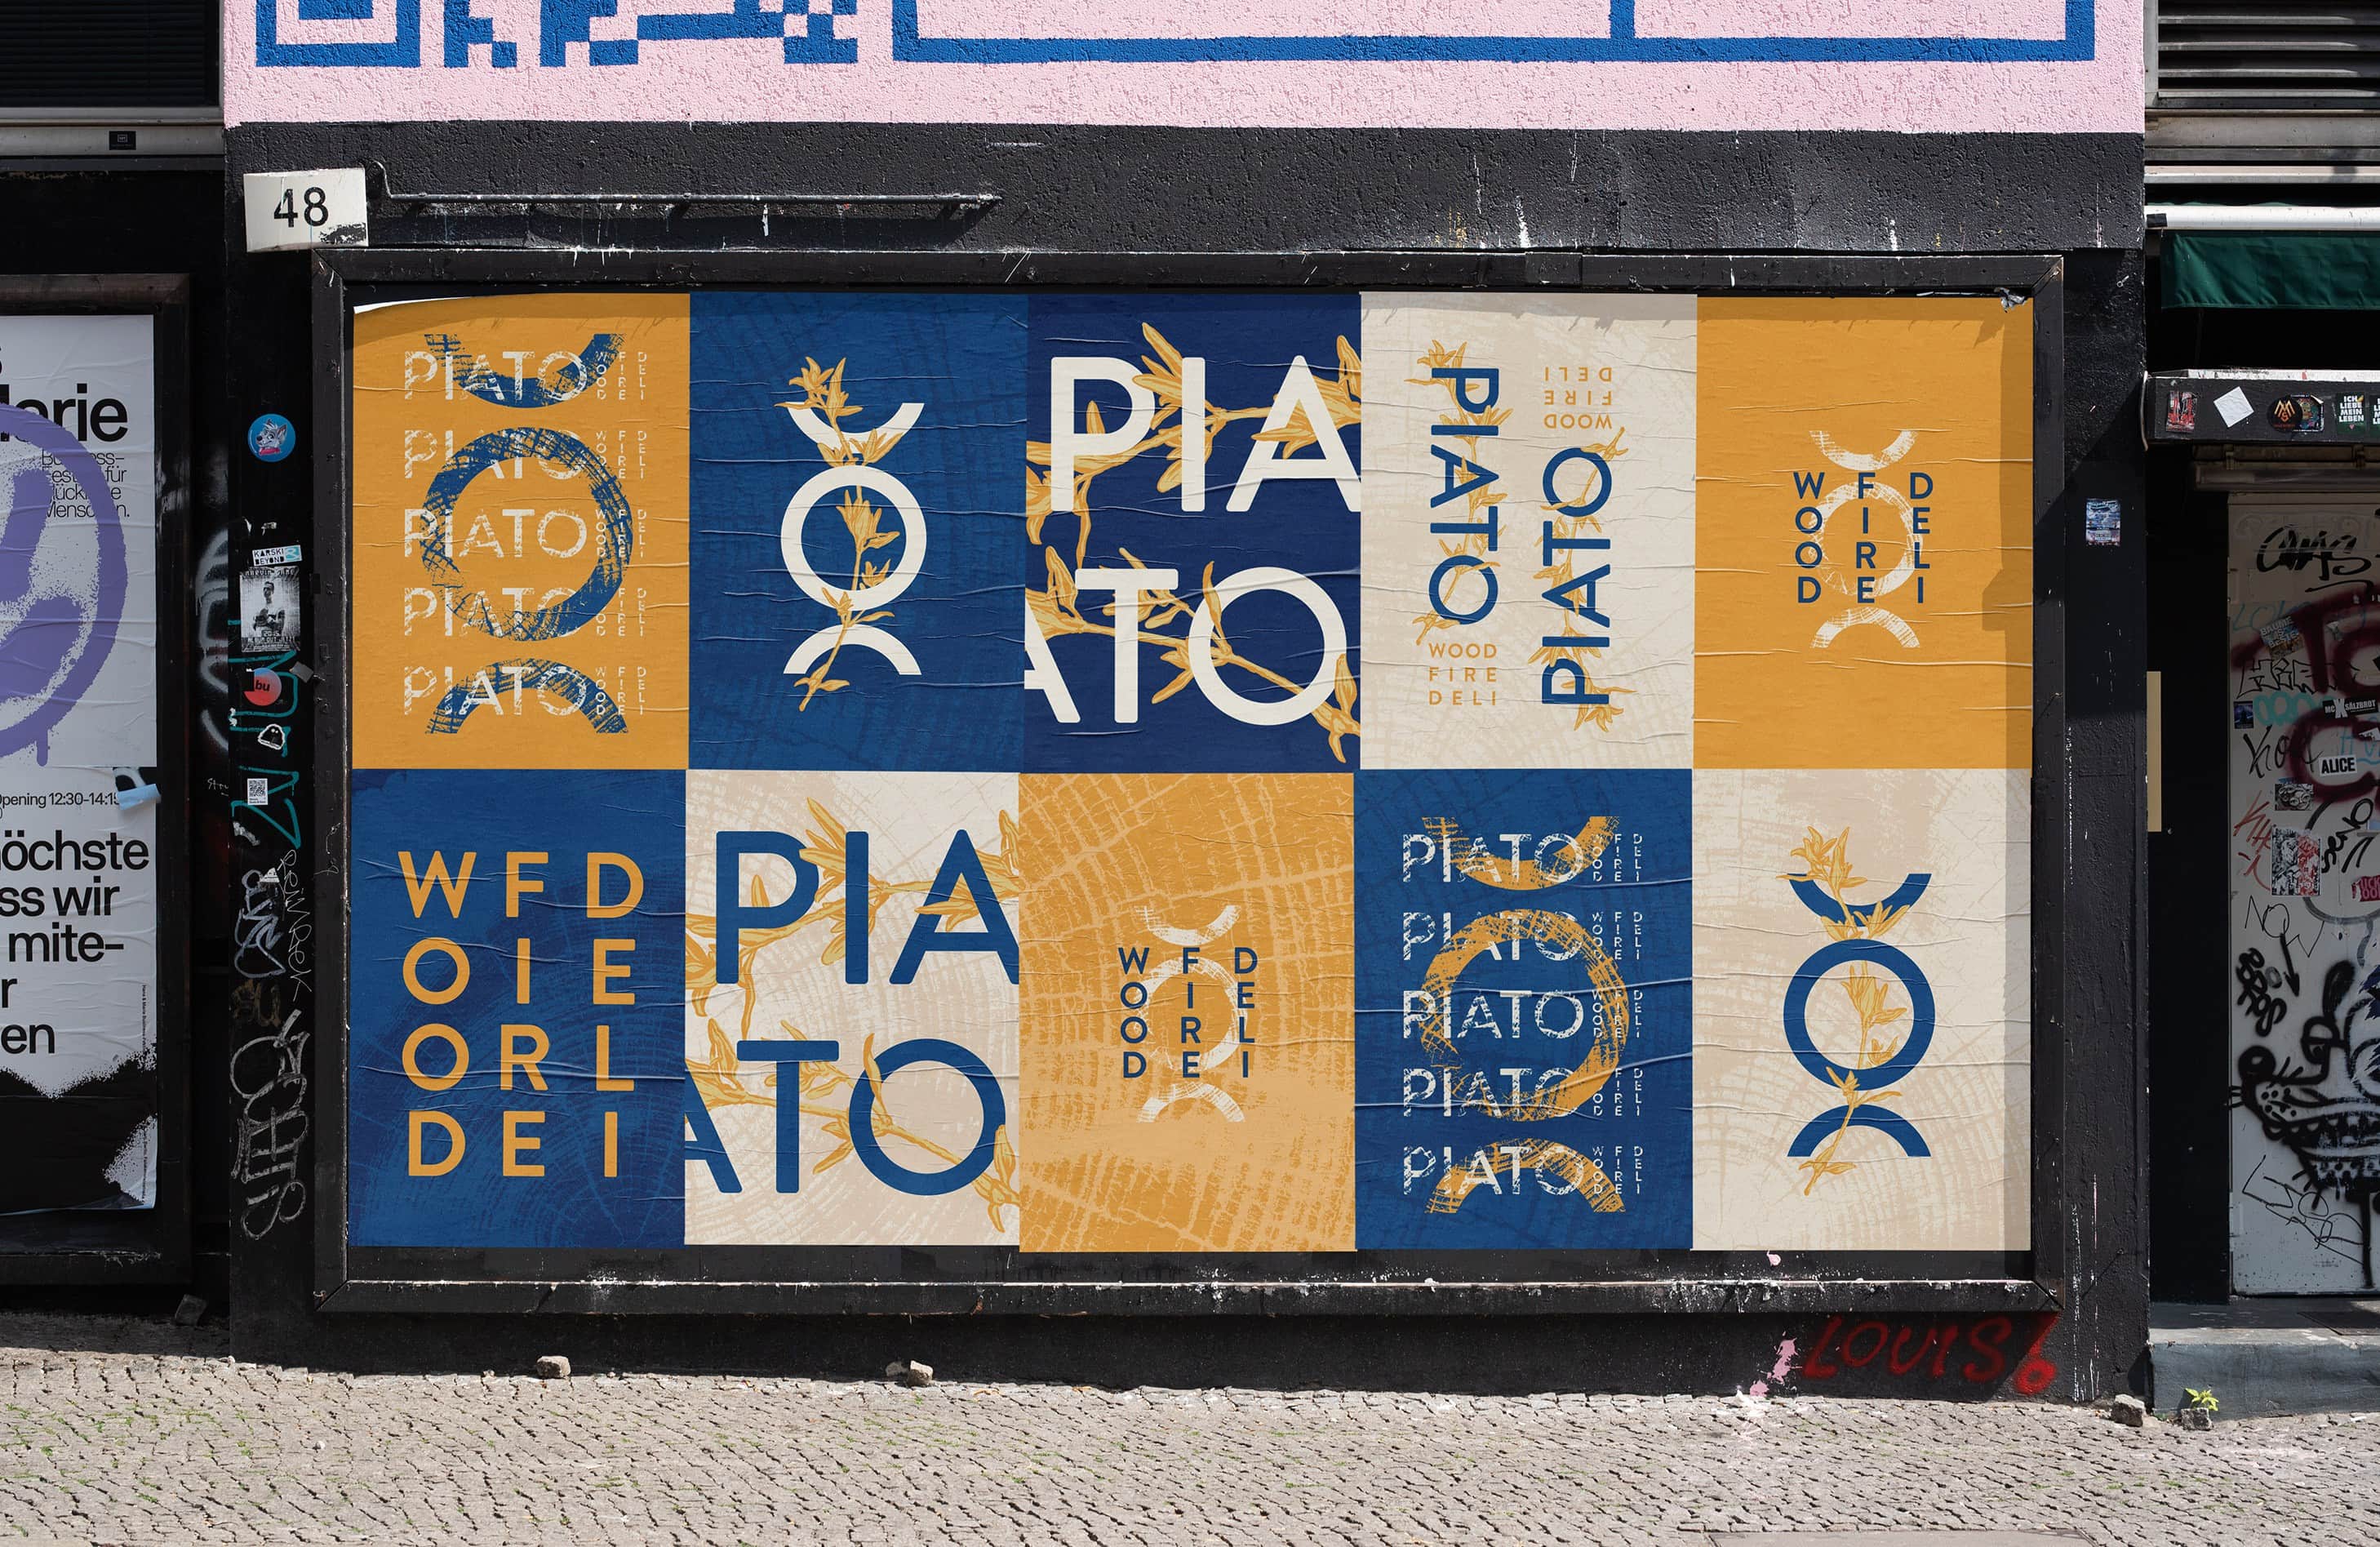 Piato-Poster-Design